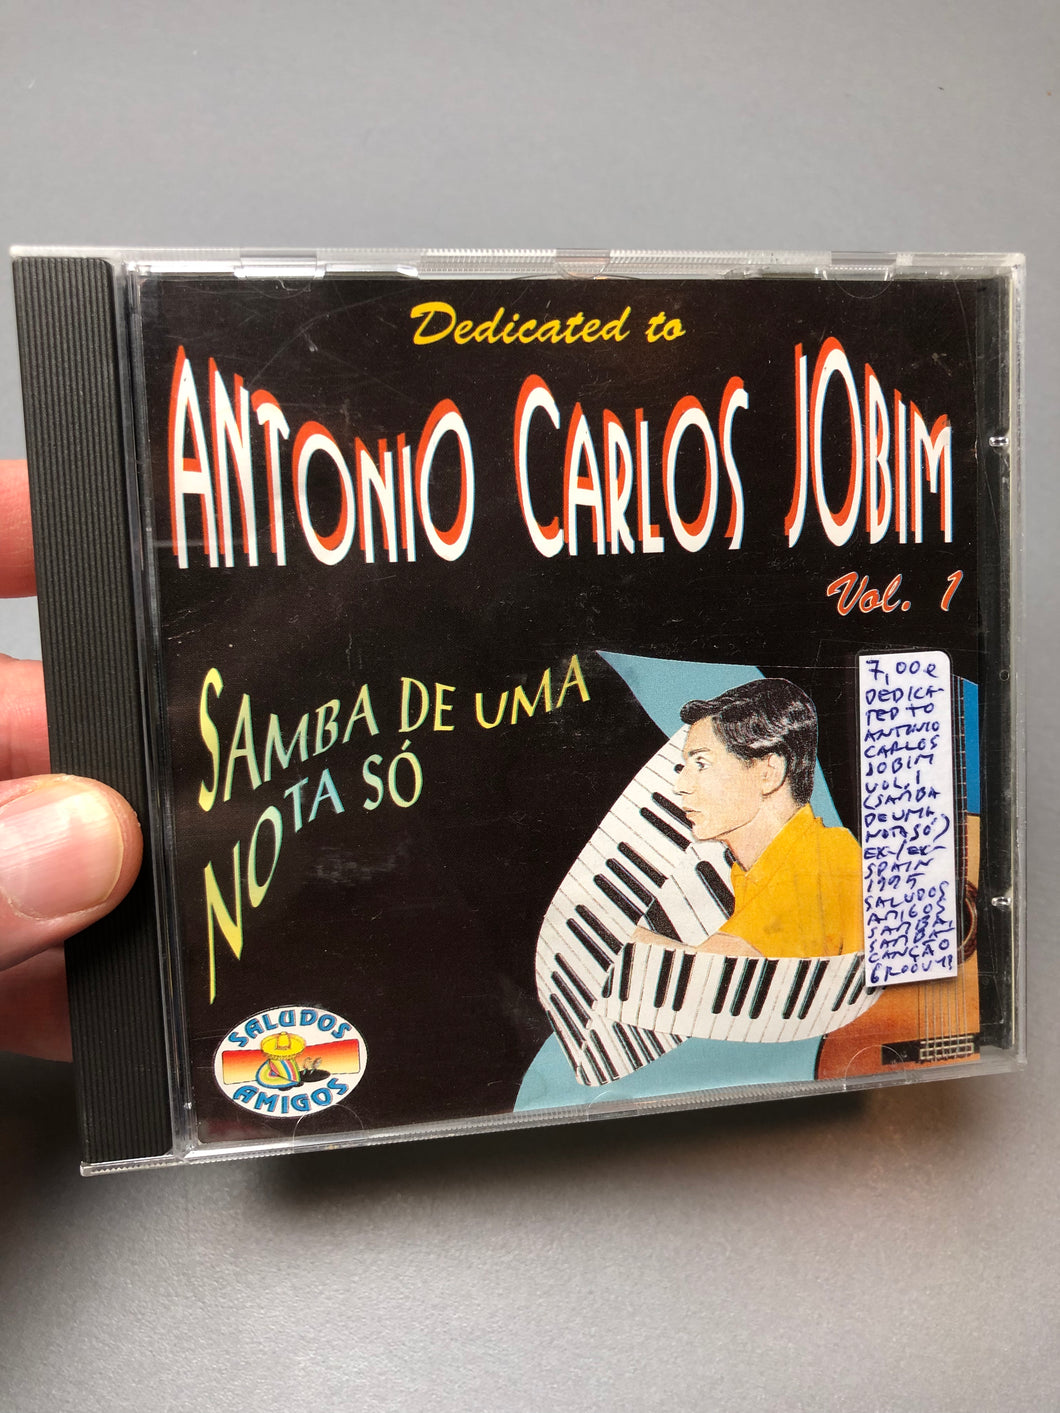 Dedicated To Antonio Carlos Jobim Vol. 1 (Samba De Uma Nota Só), Spain 1995